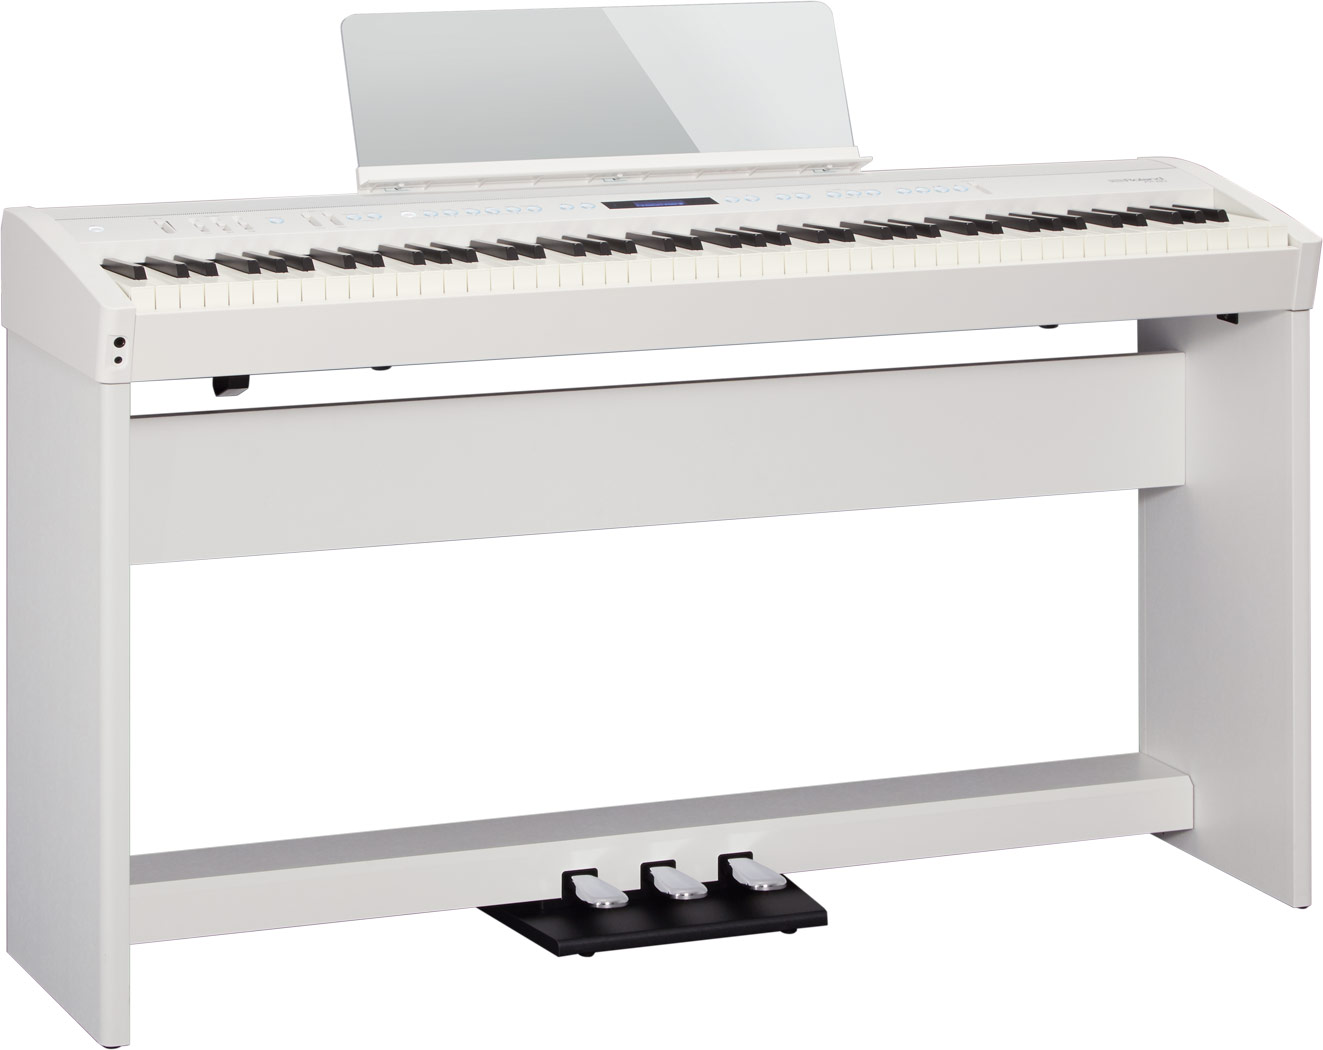 Roland Fp-60 - White - Piano NumÉrique Portable - Variation 1